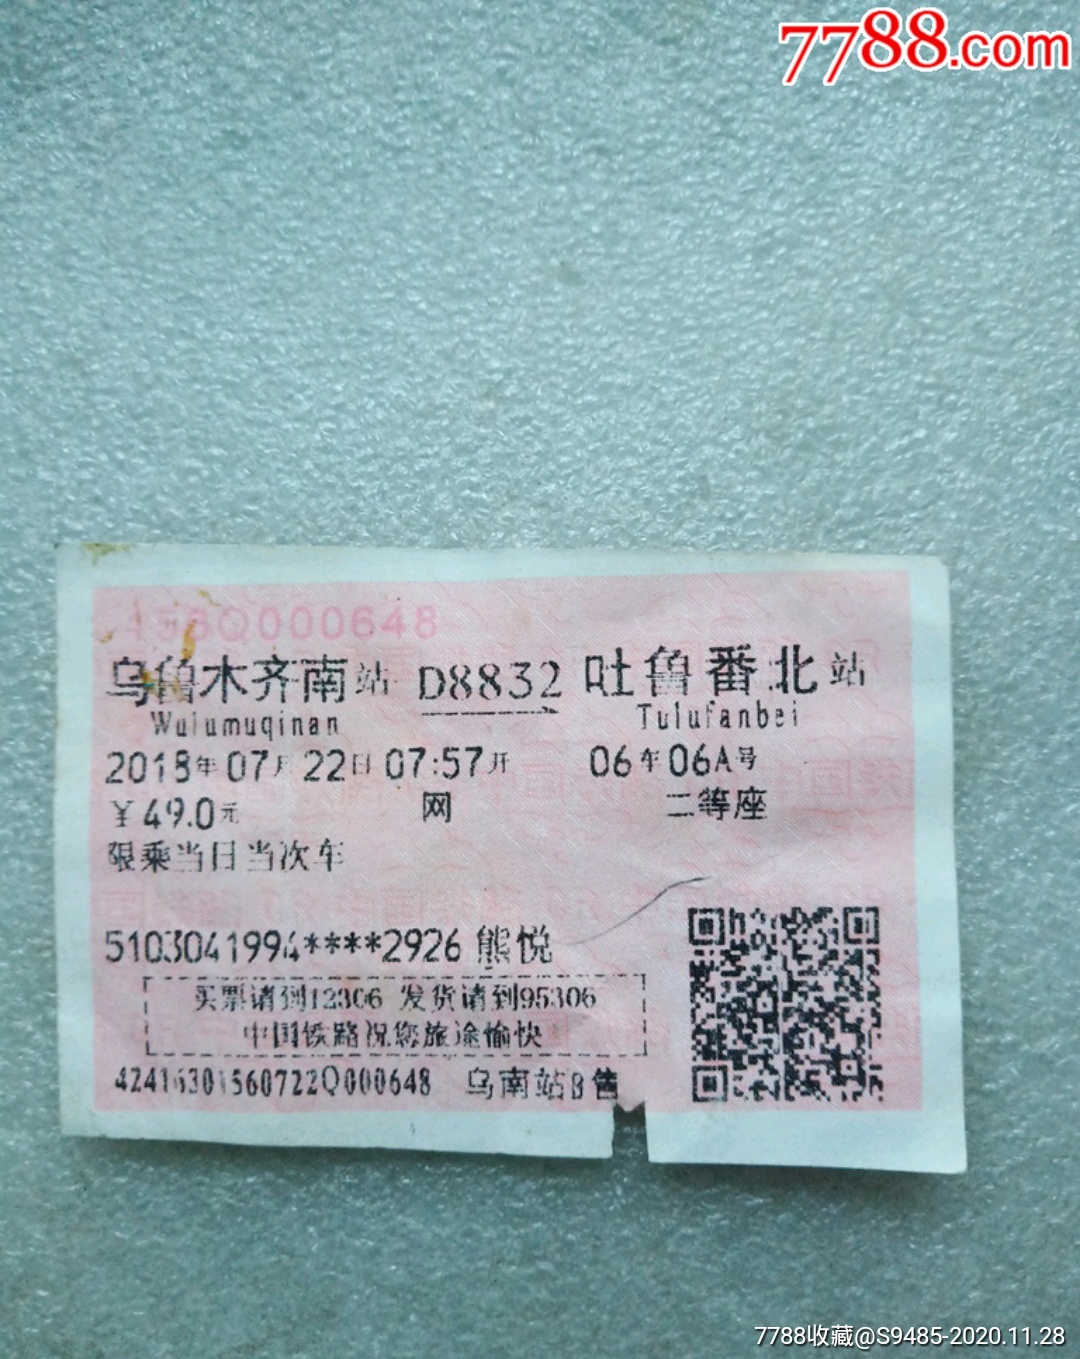 吐鲁番火车票图片